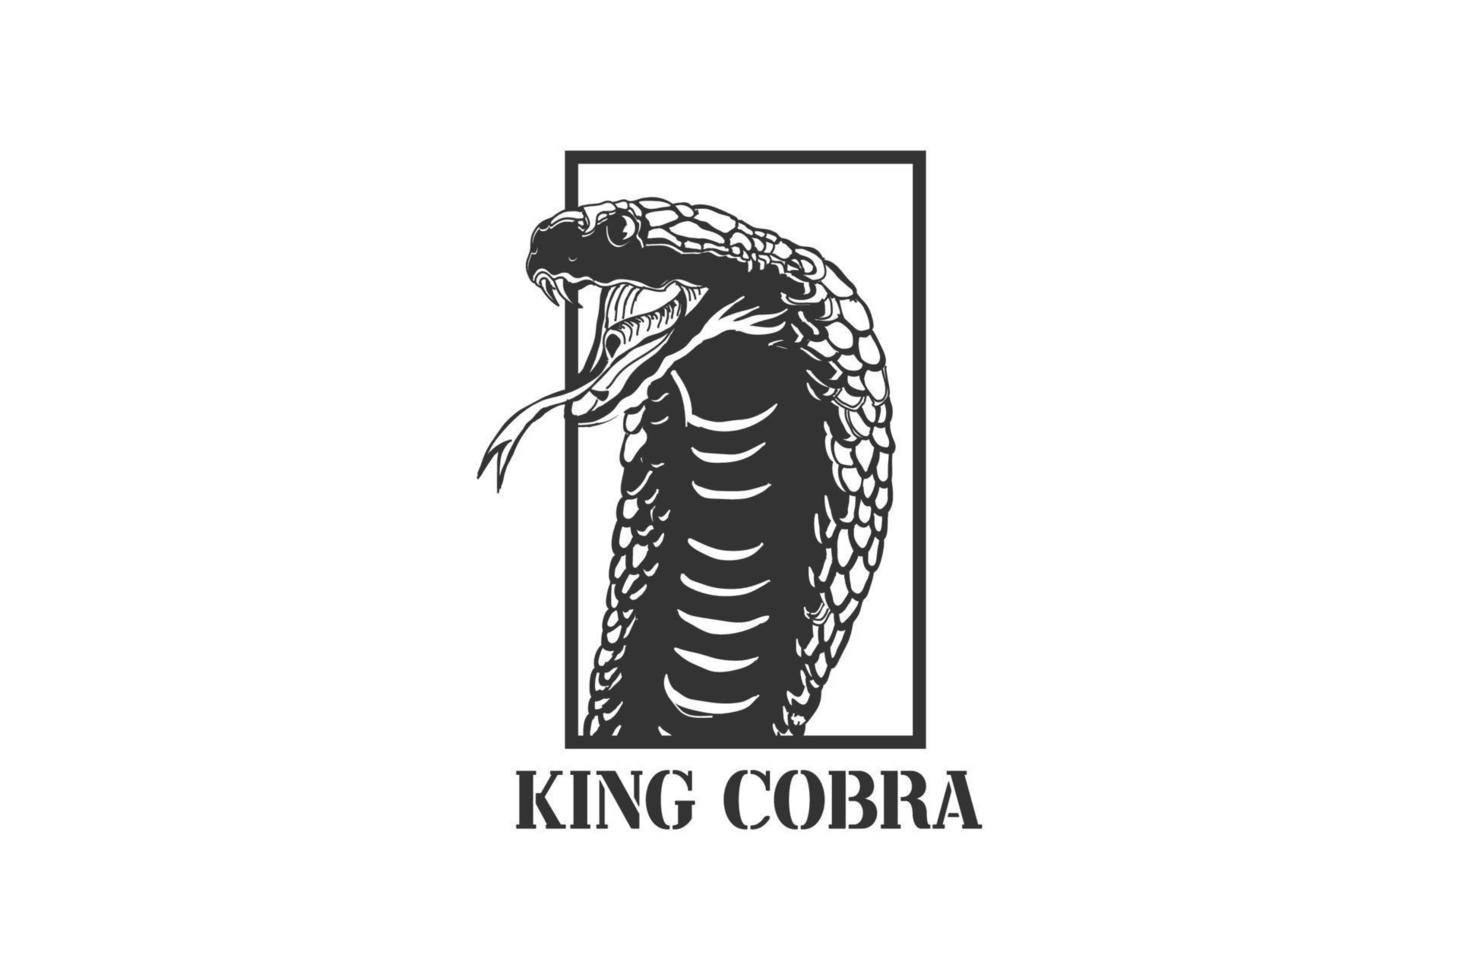 cobra rey venenosa retro vintage o diseño de logotipo de cabeza de reptil de serpiente mamba negra vector